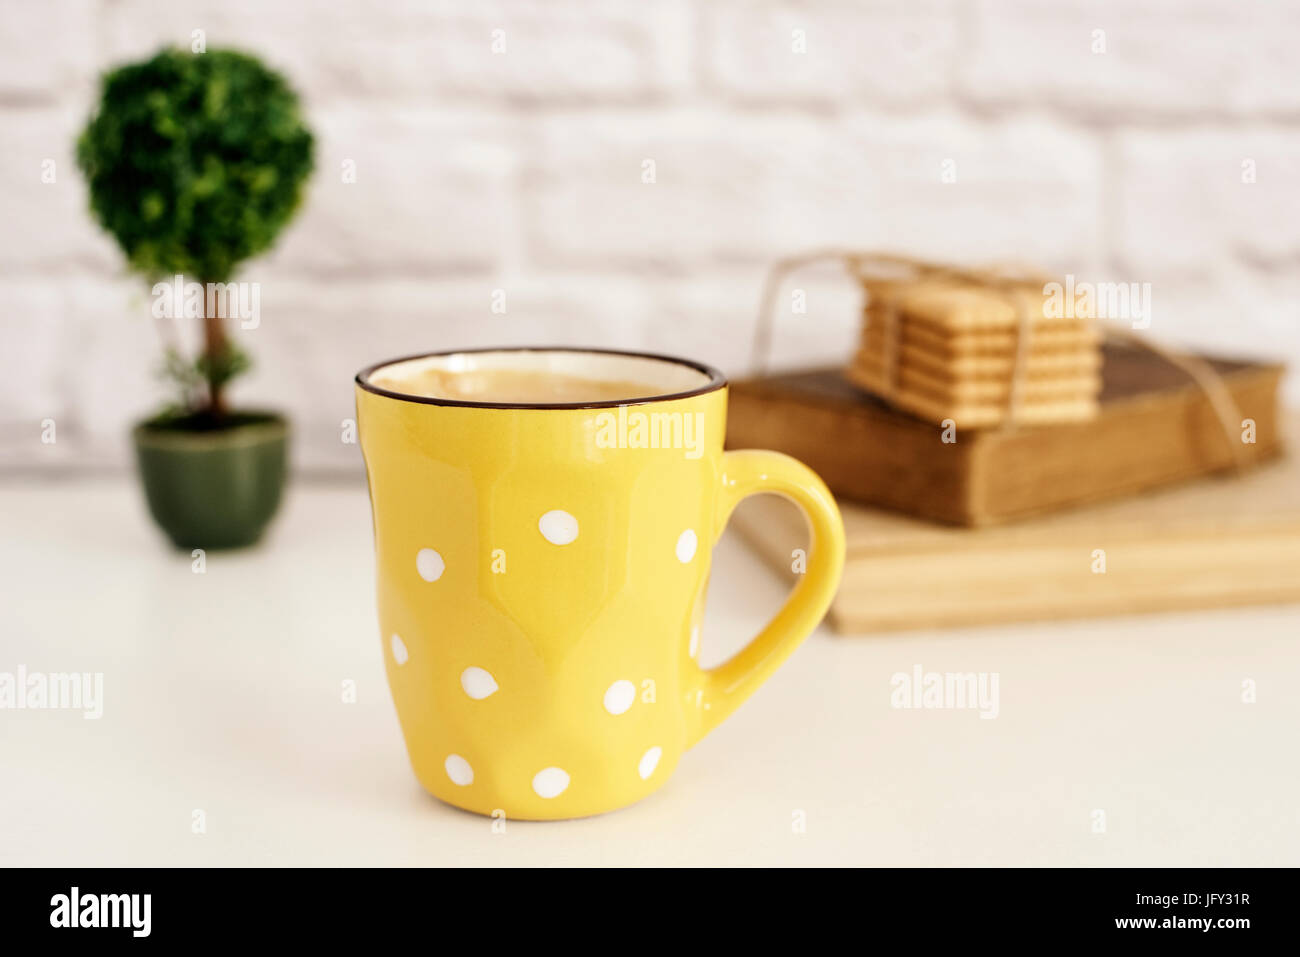 Tasse à café, cappuccino, latte, vieux livres, cookies et bonsai sur tableau blanc. Mur de briques grises. Concept de vie de loisirs. Lumière de fond rustique Banque D'Images